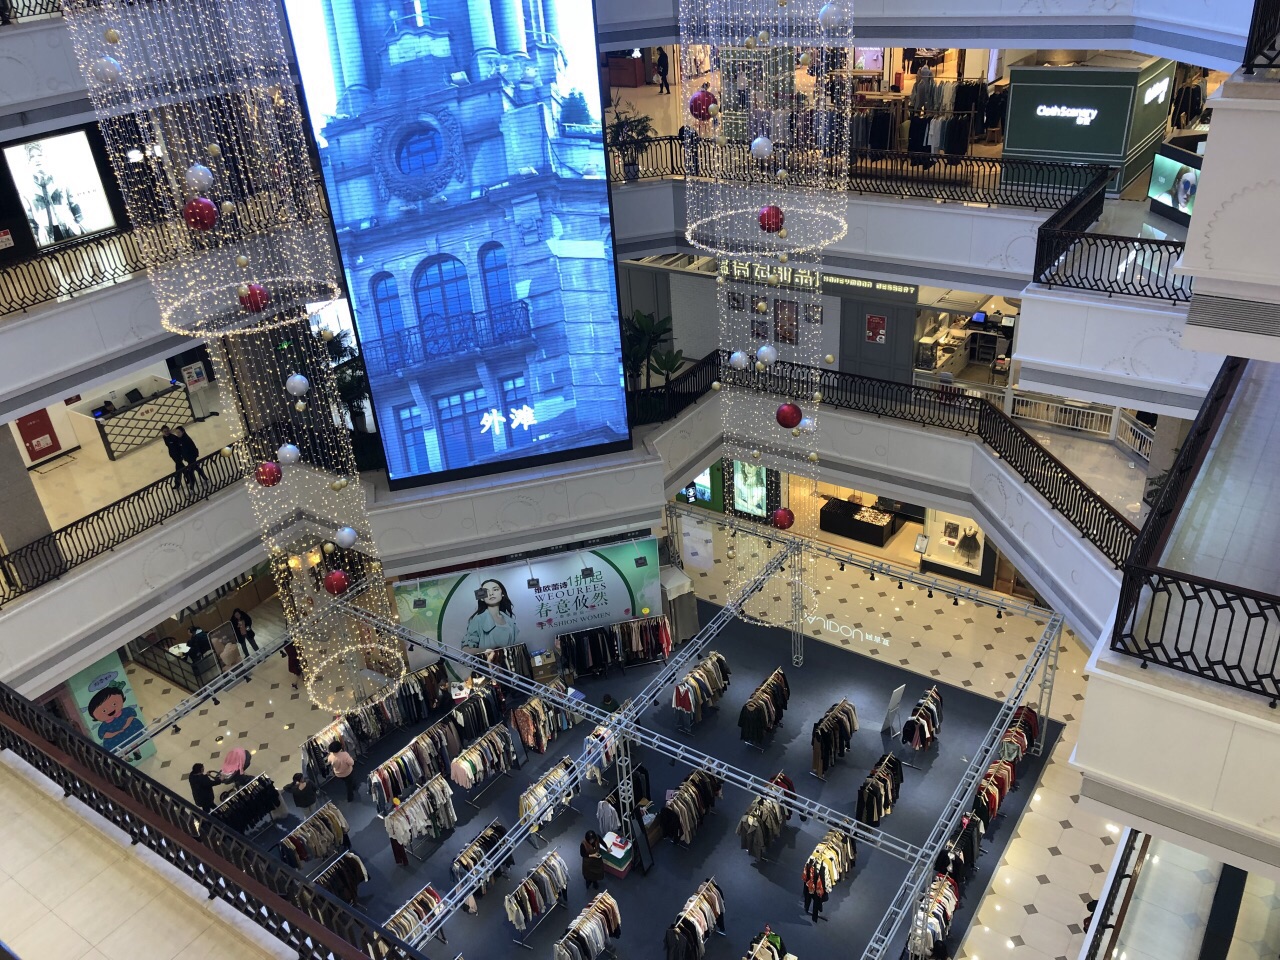 百联滨江购物中心